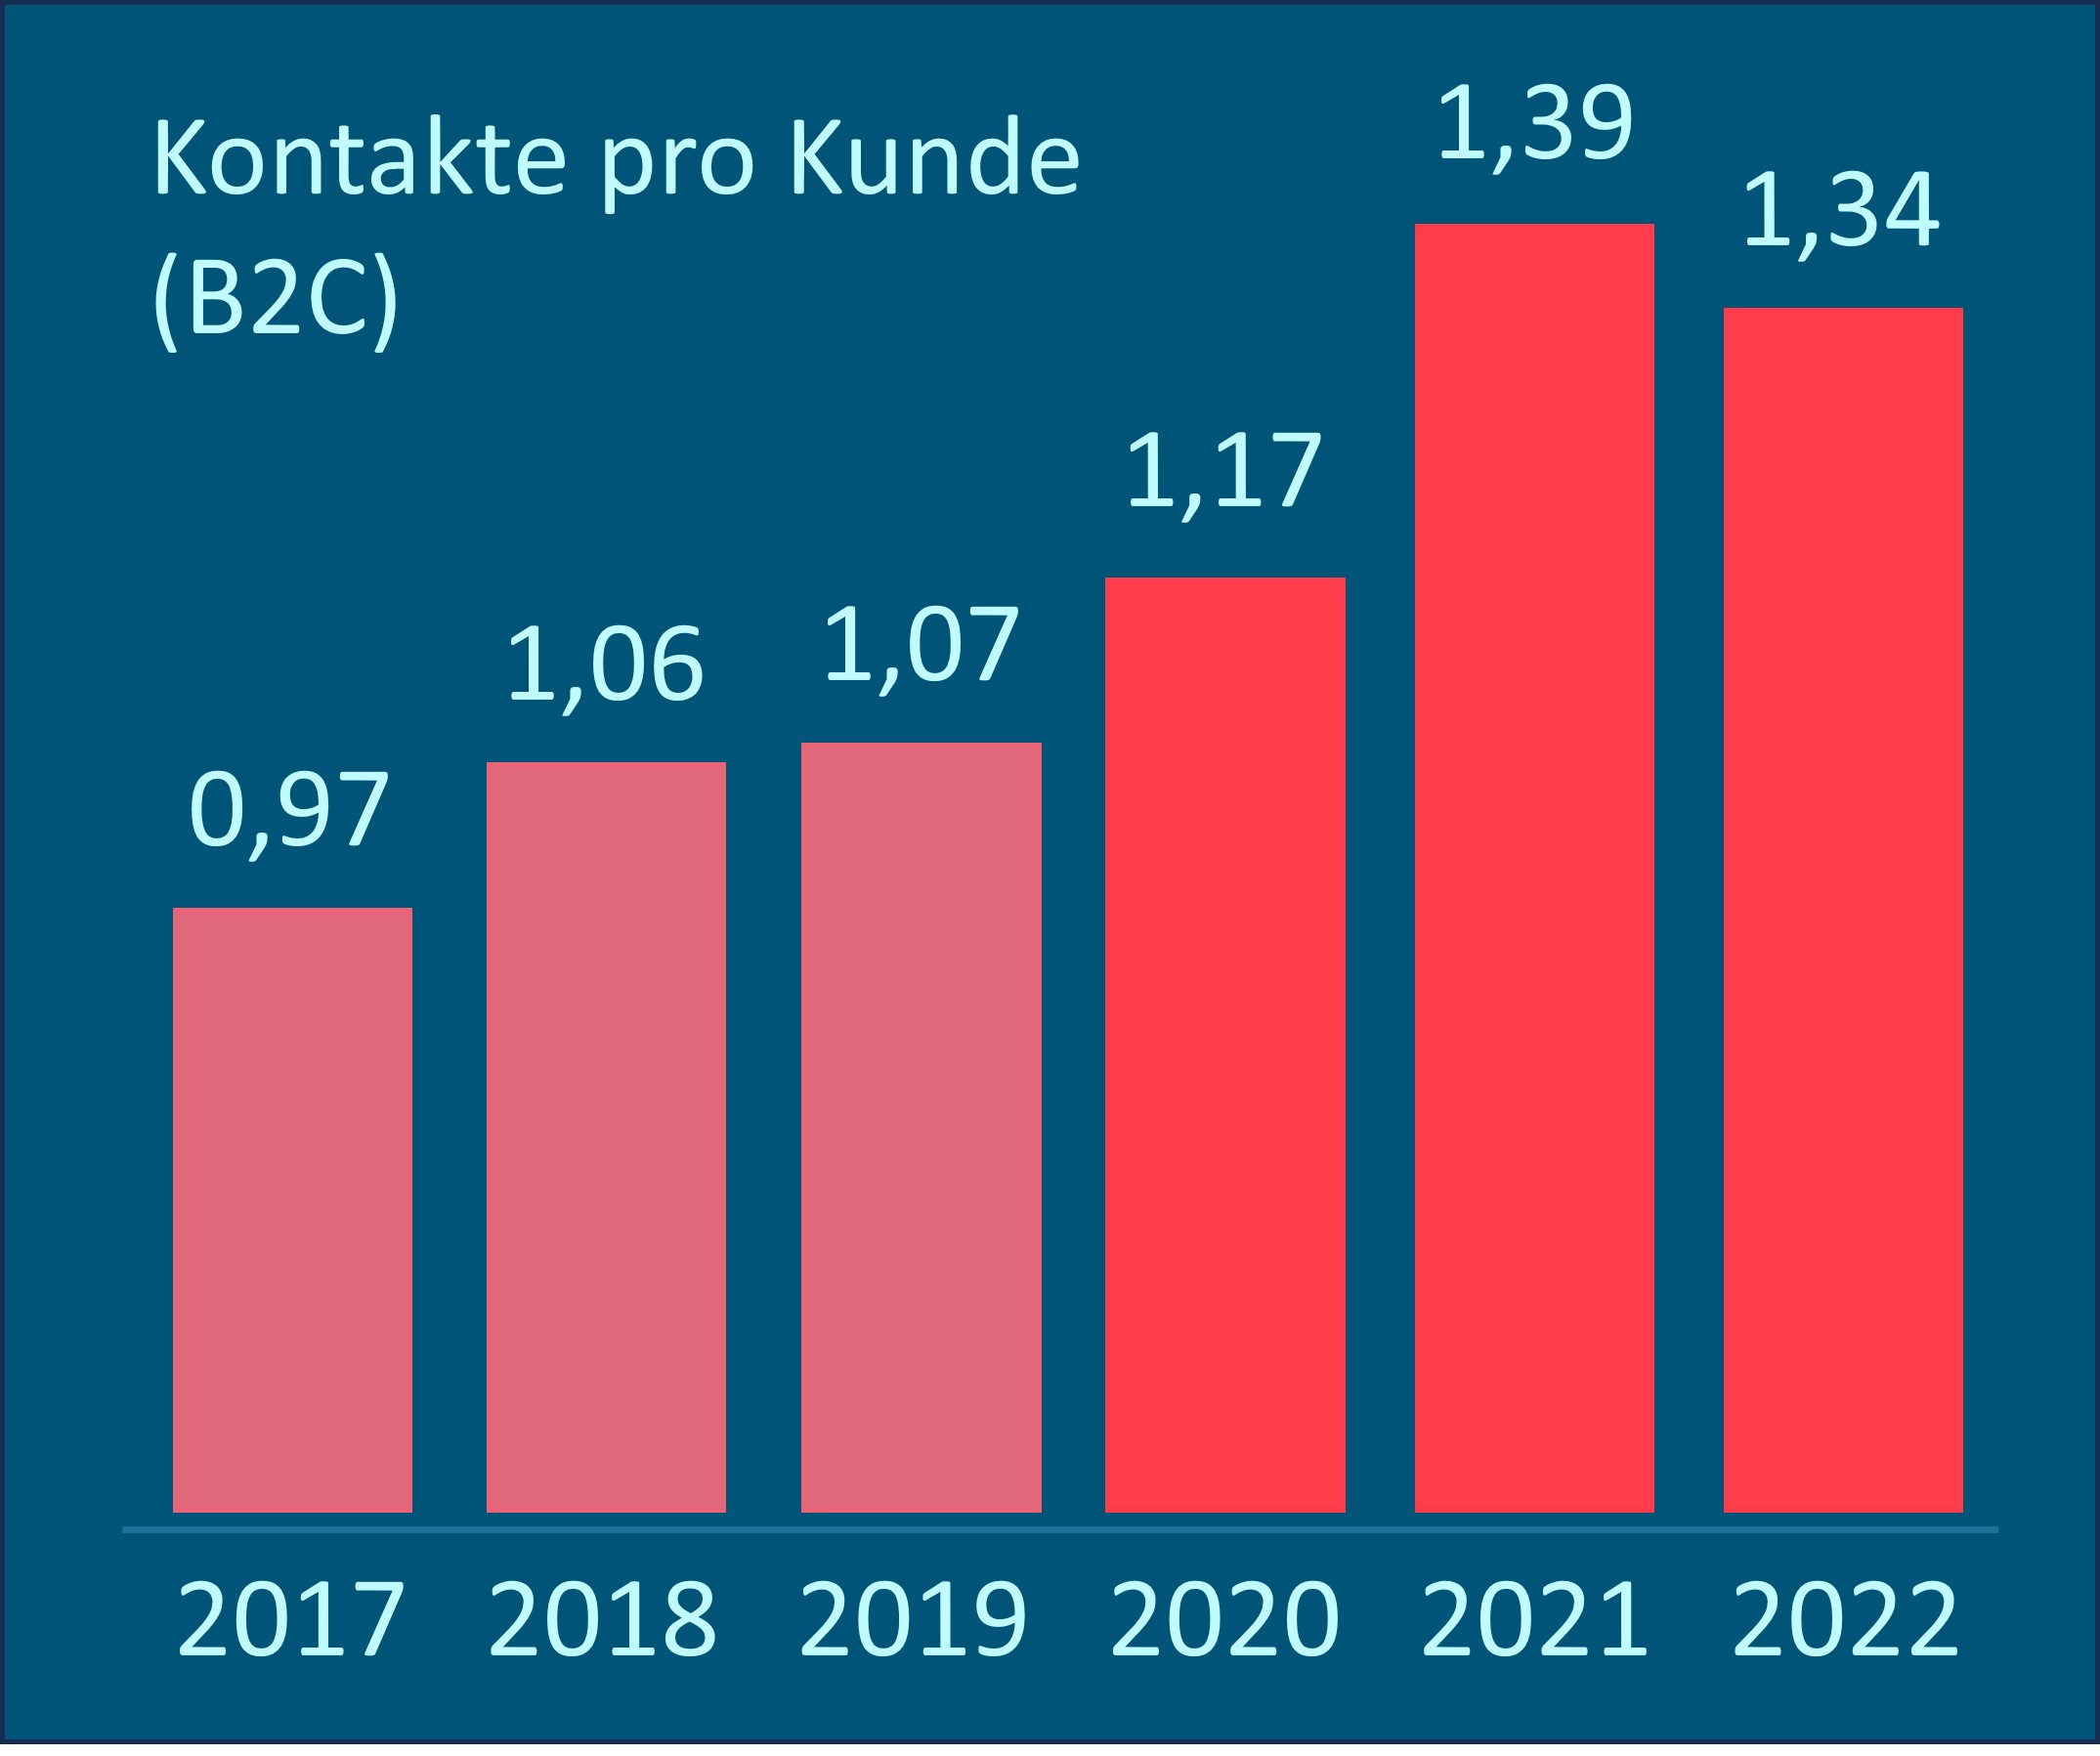 Balkendiagramm zeigt die Entwicklung der Kontakte pro Kunde (B2C) von 2017 bis 2022. 2017 lag die Quote bei 0,97. In den Jahren 2021 und 2022 lag sie bereits bei 1,39 bzw. 1,34.